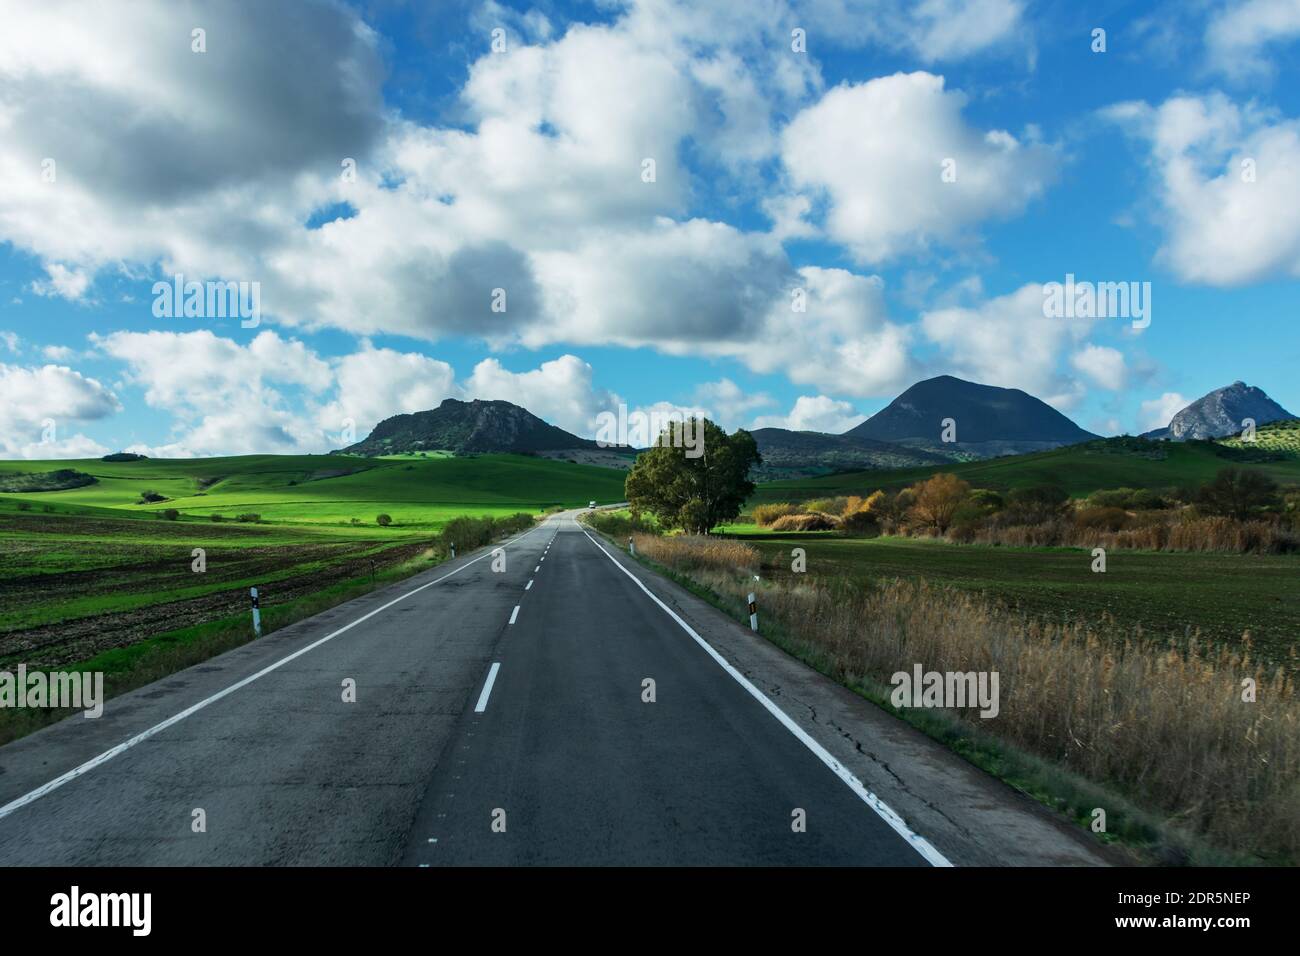 Strada secondaria che invita il viaggiatore a godersi il viaggio tra campi verdi con montagne sullo sfondo e un cielo blu con nuvole di cotone. Foto Stock